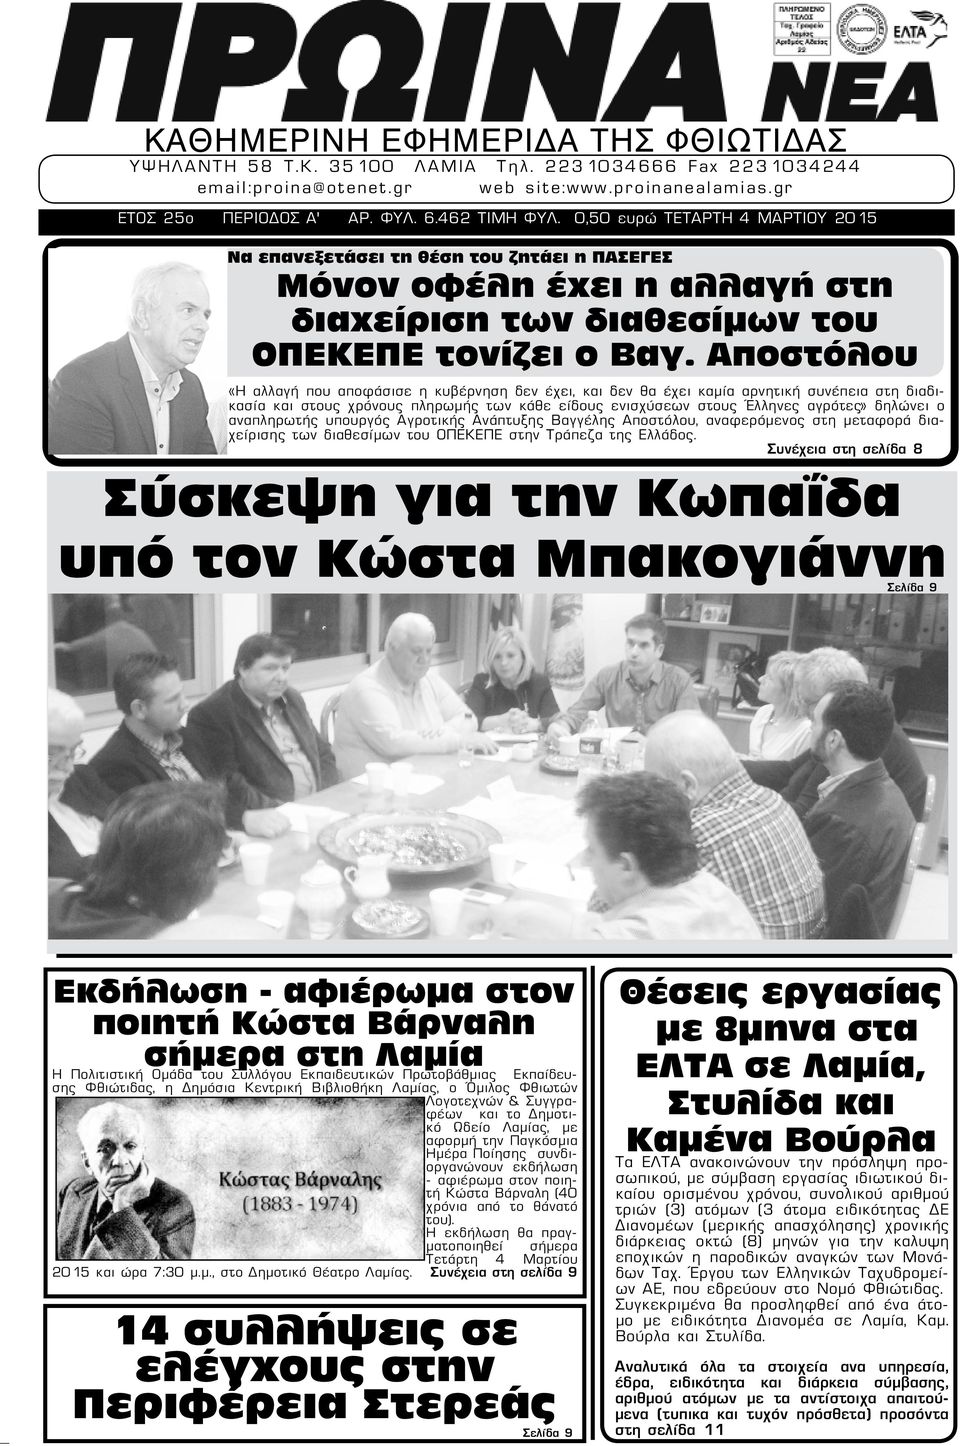 Αποστόλου «Η αλλαγή που αποφάσισε η κυβέρνηση δεν έχει, και δεν θα έχει καμία αρνητική συνέπεια στη διαδικασία και στους χρόνους πληρωμής των κάθε είδους ενισχύσεων στους Έλληνες αγρότες» δηλώνει ο